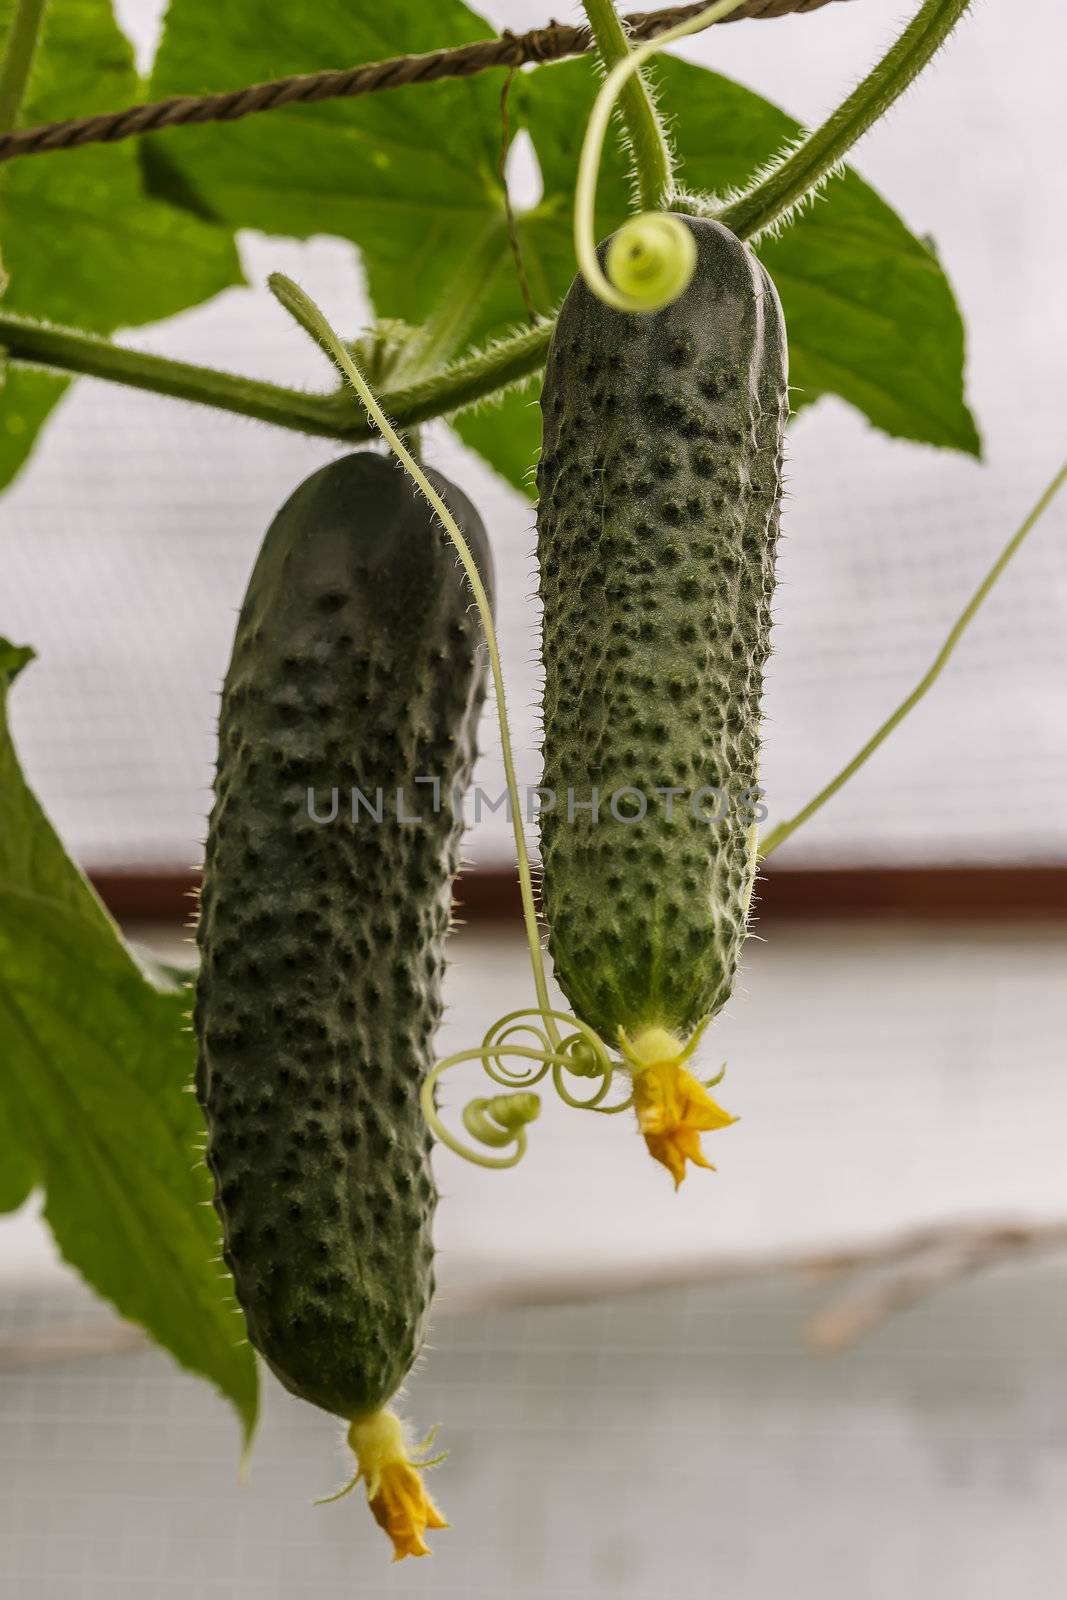 2 Green cucumbers by Roka